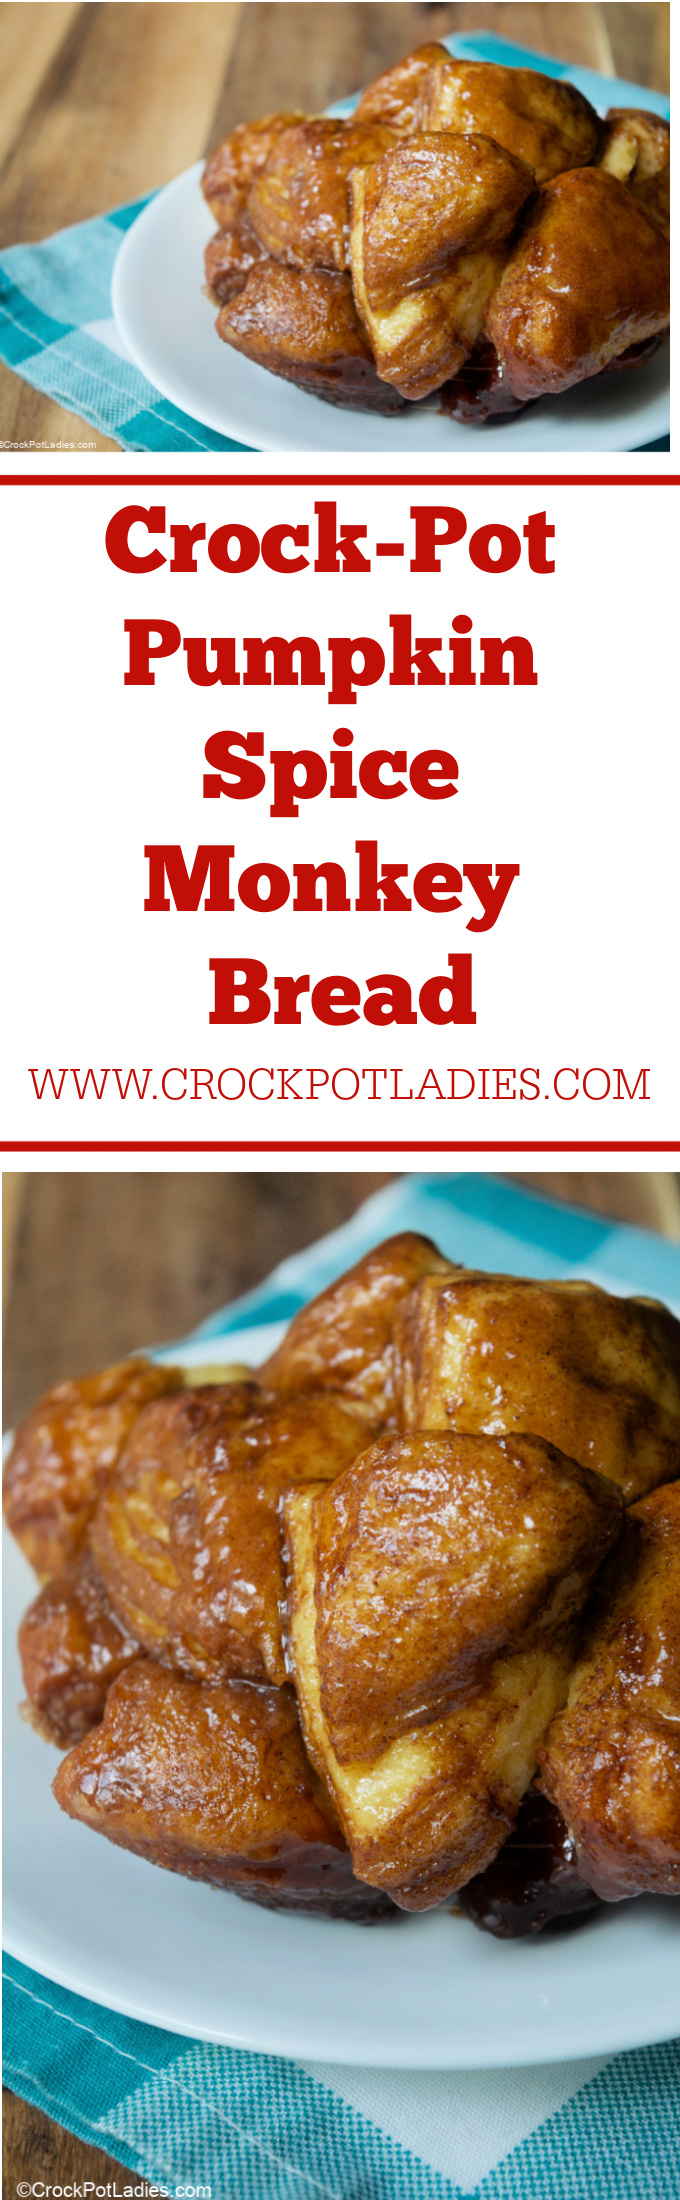 Crock-Pot Pumpkin Spice Monkey Bread